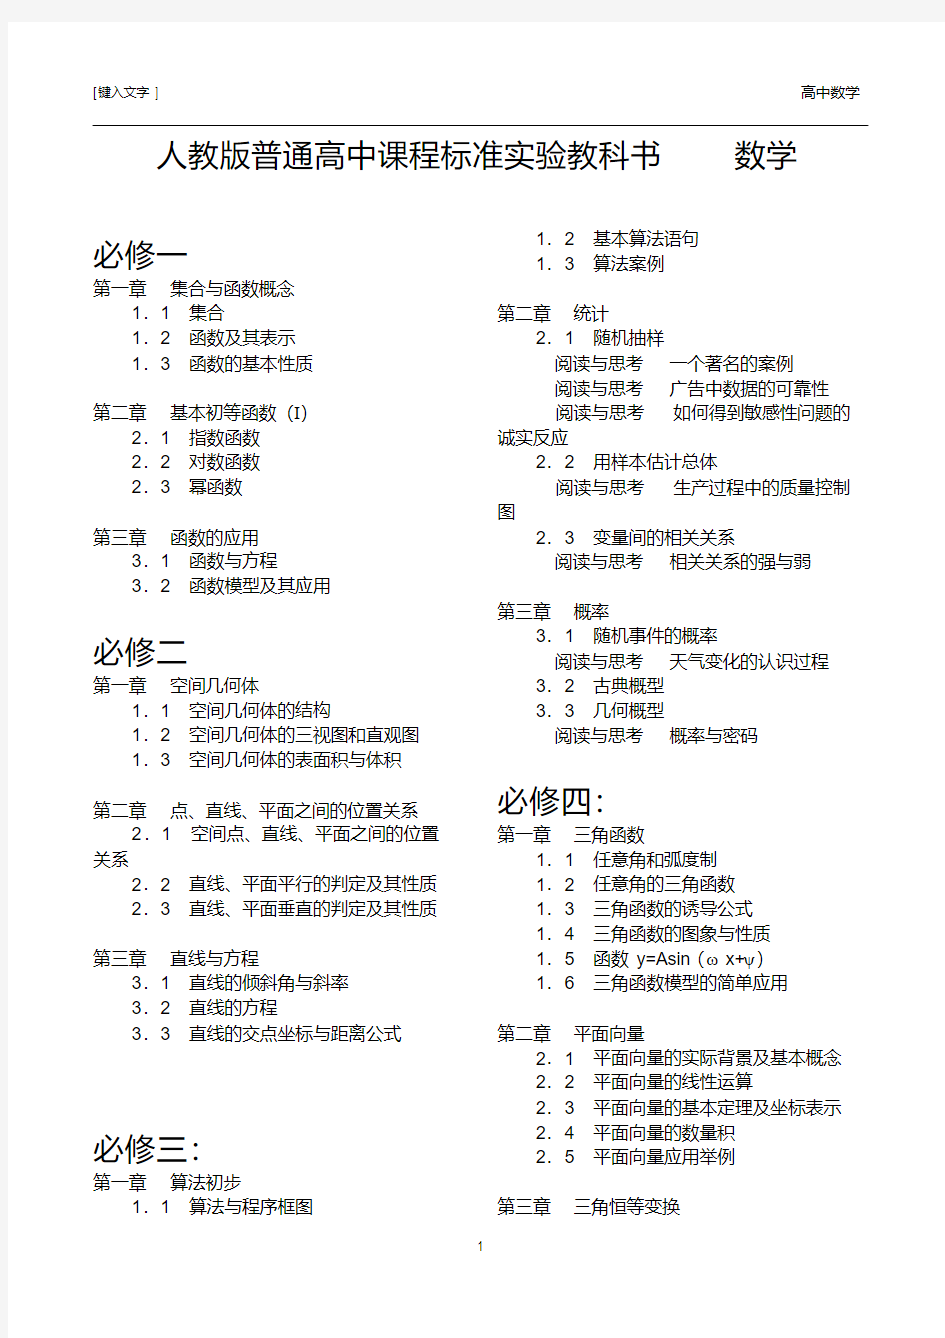 新版人教版高中数学教材最新目录(1)-新版.pdf